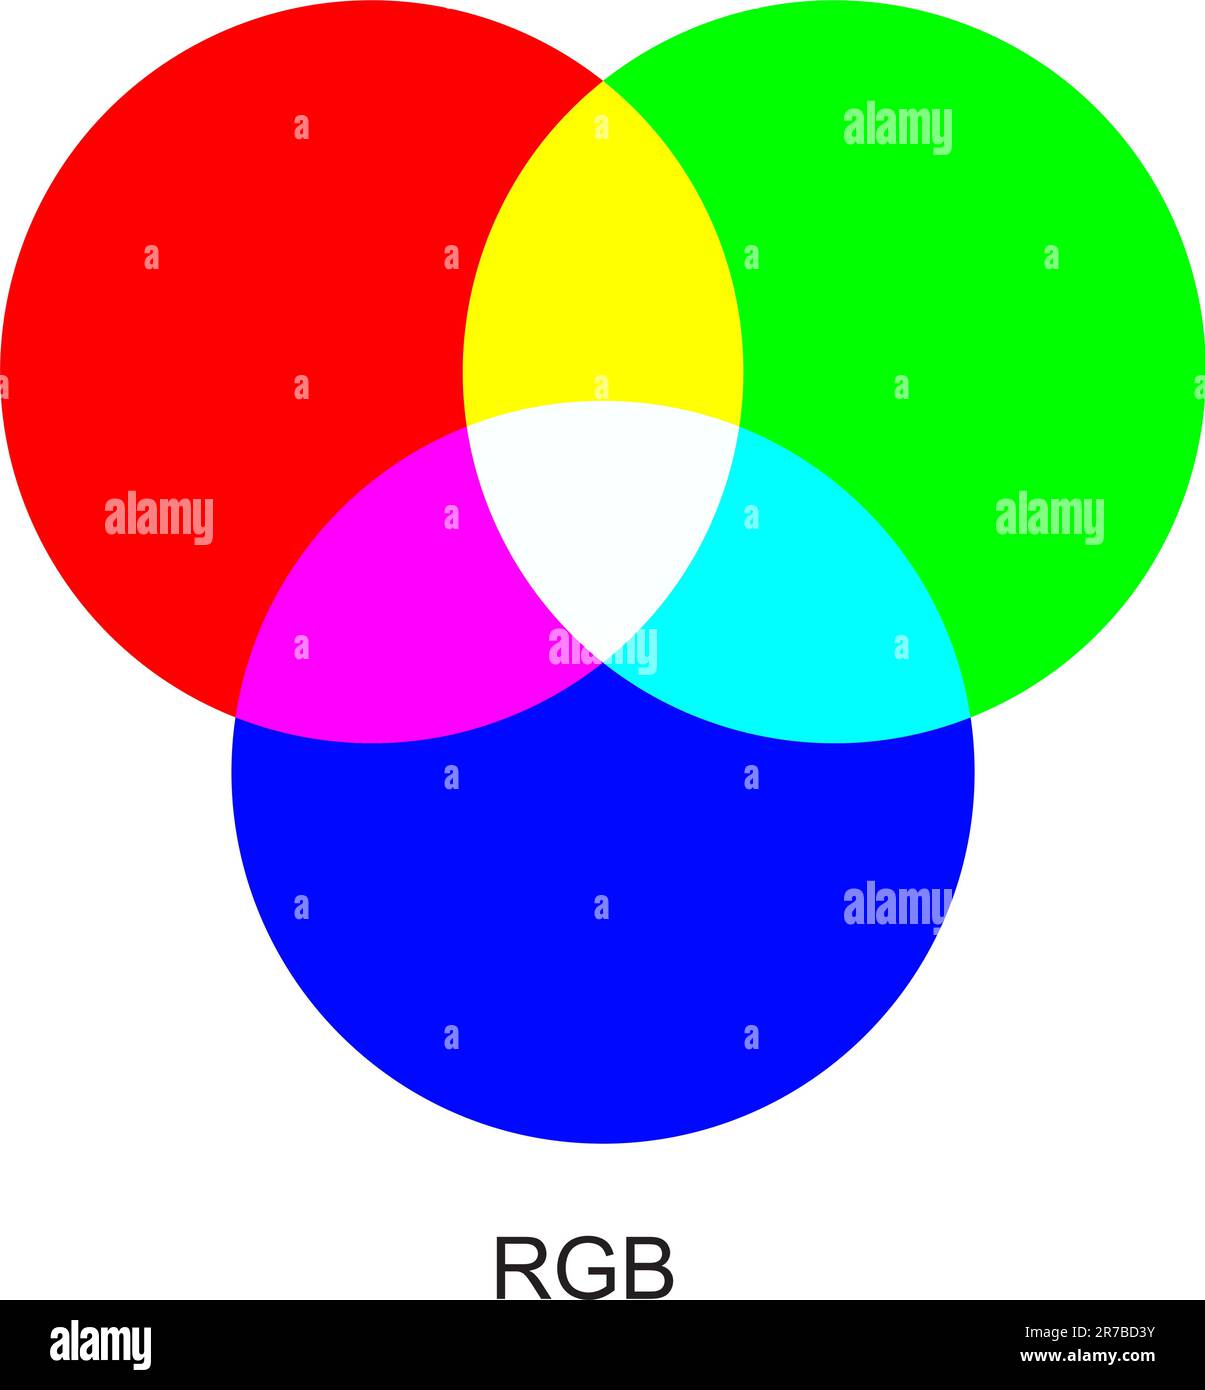 Vektordiagramm zur Erläuterung der Unterschiede zwischen RGB-Farbmodi. Stock Vektor